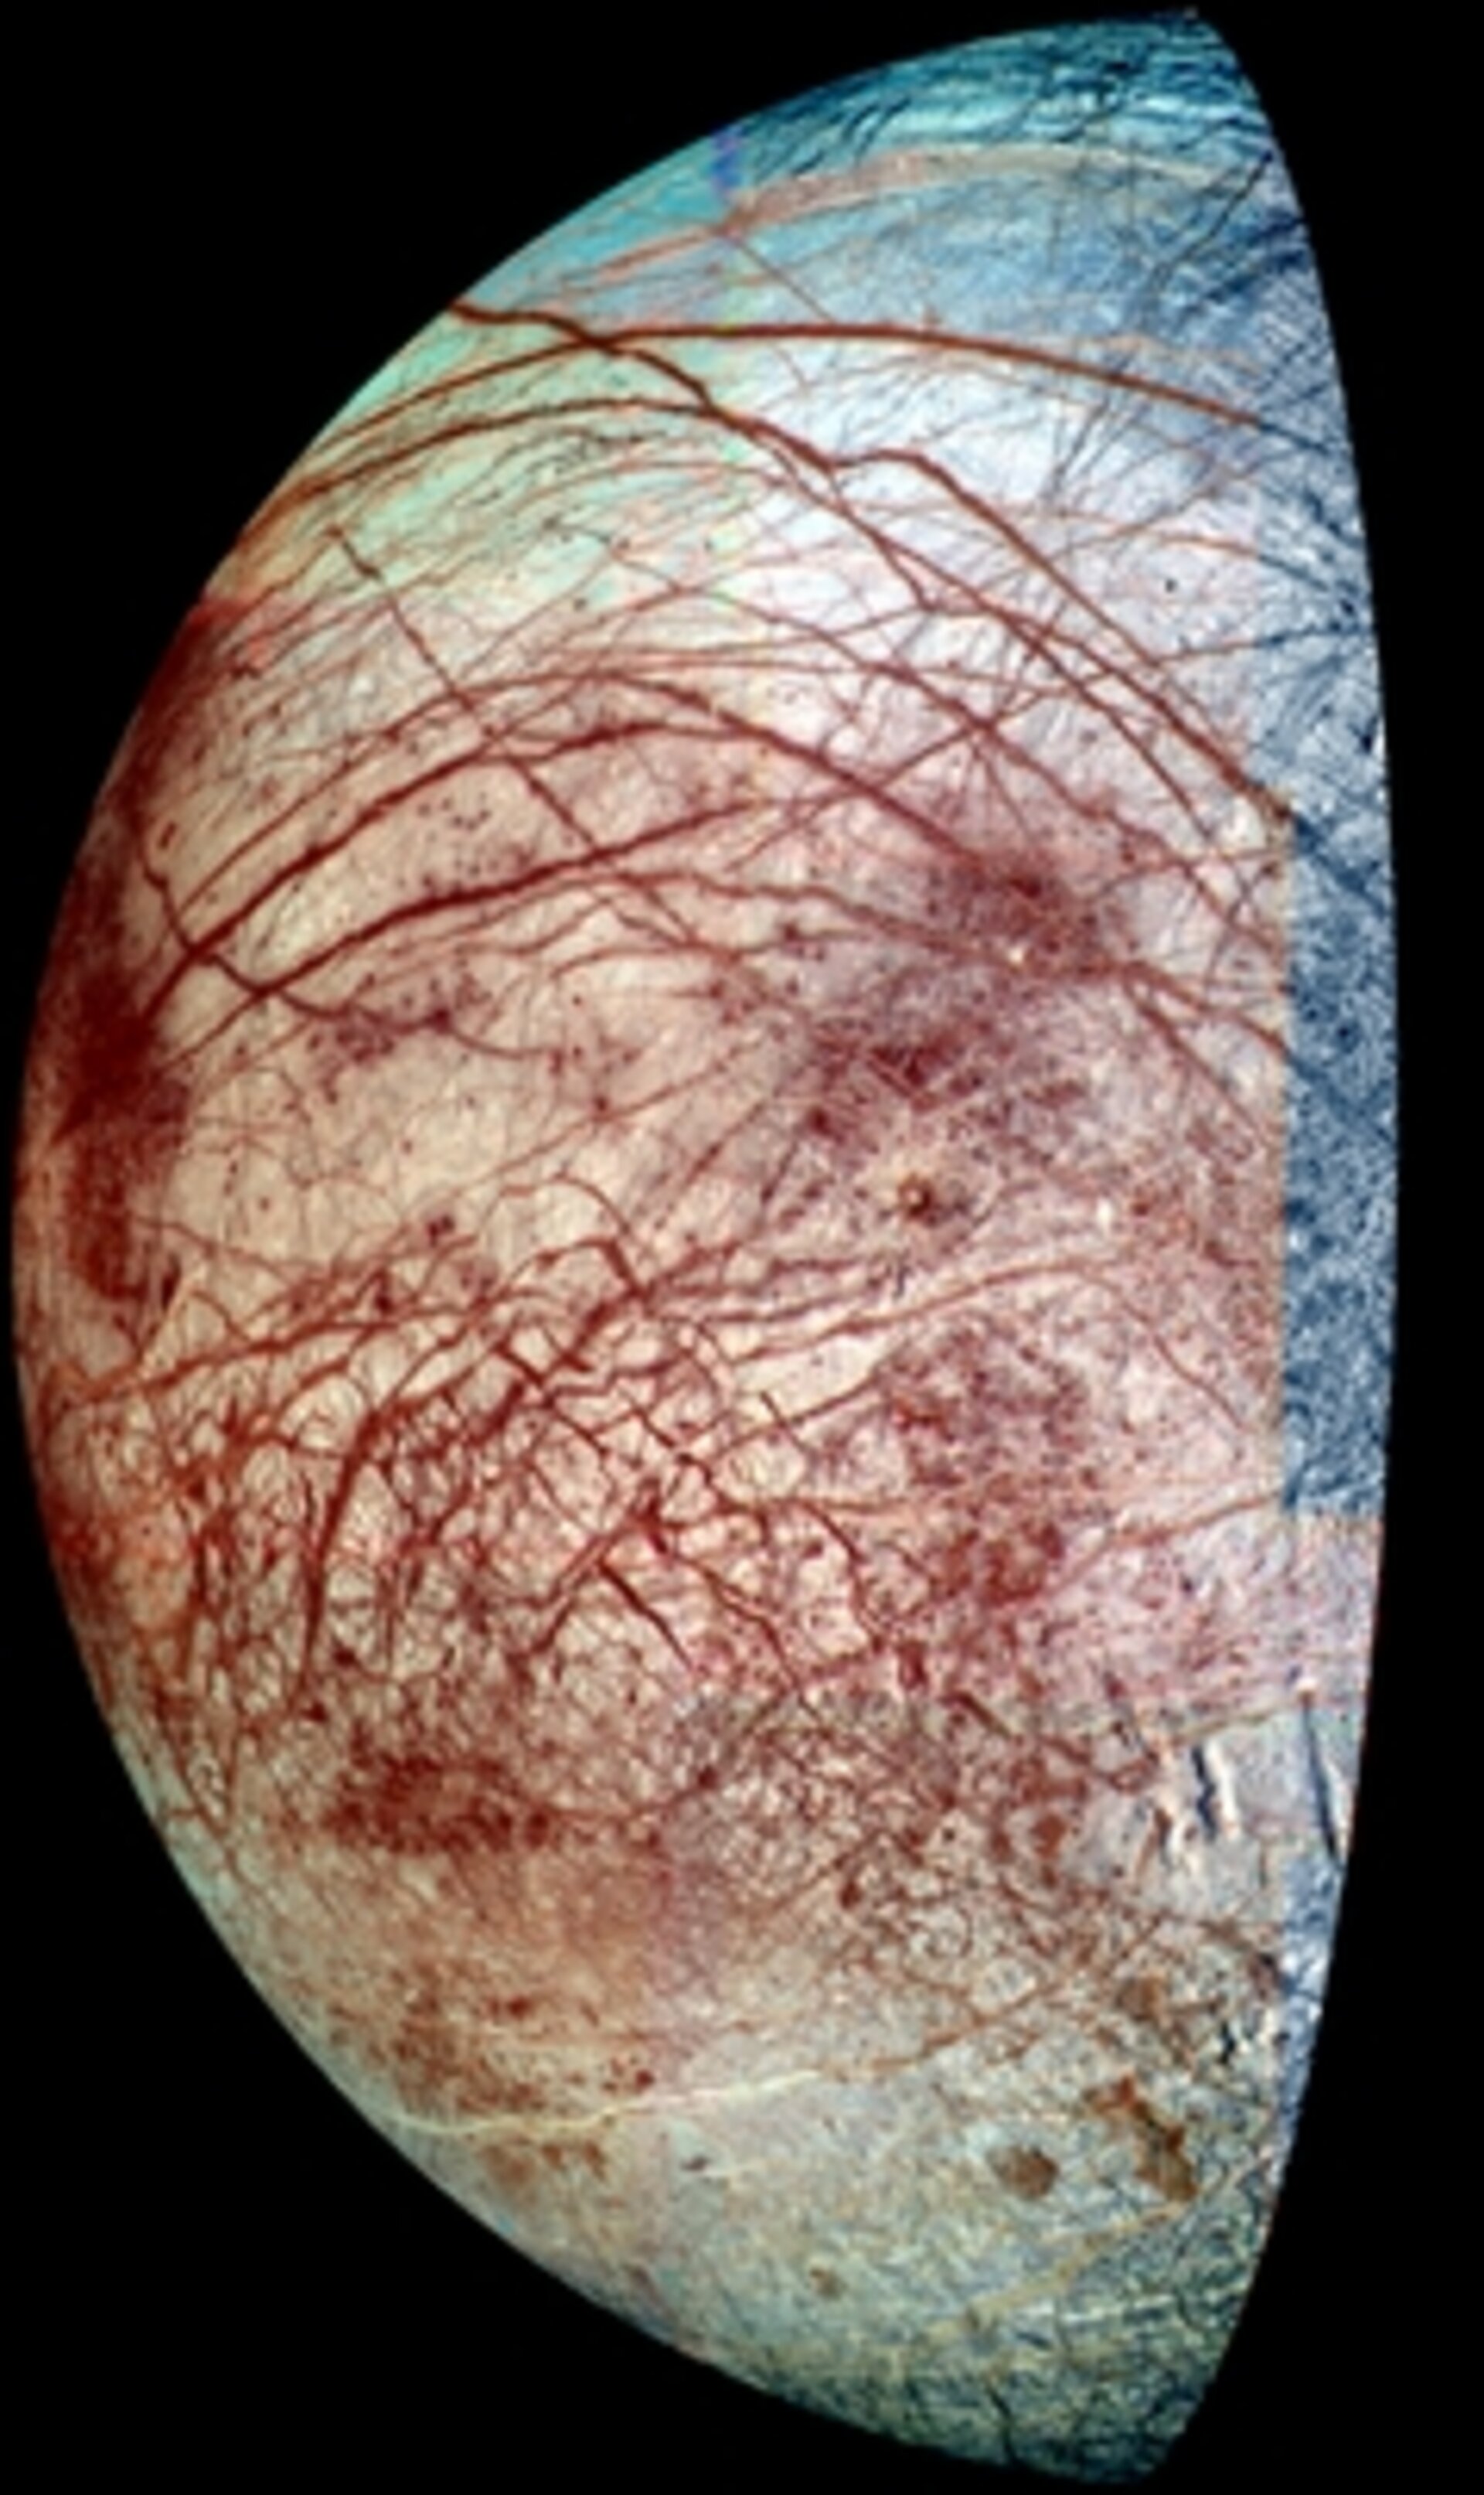 Den förmodade oceanen under Jupiter-månen Europas isskorpa är ett av solsystemets allra hetaste mål för astrobiologer